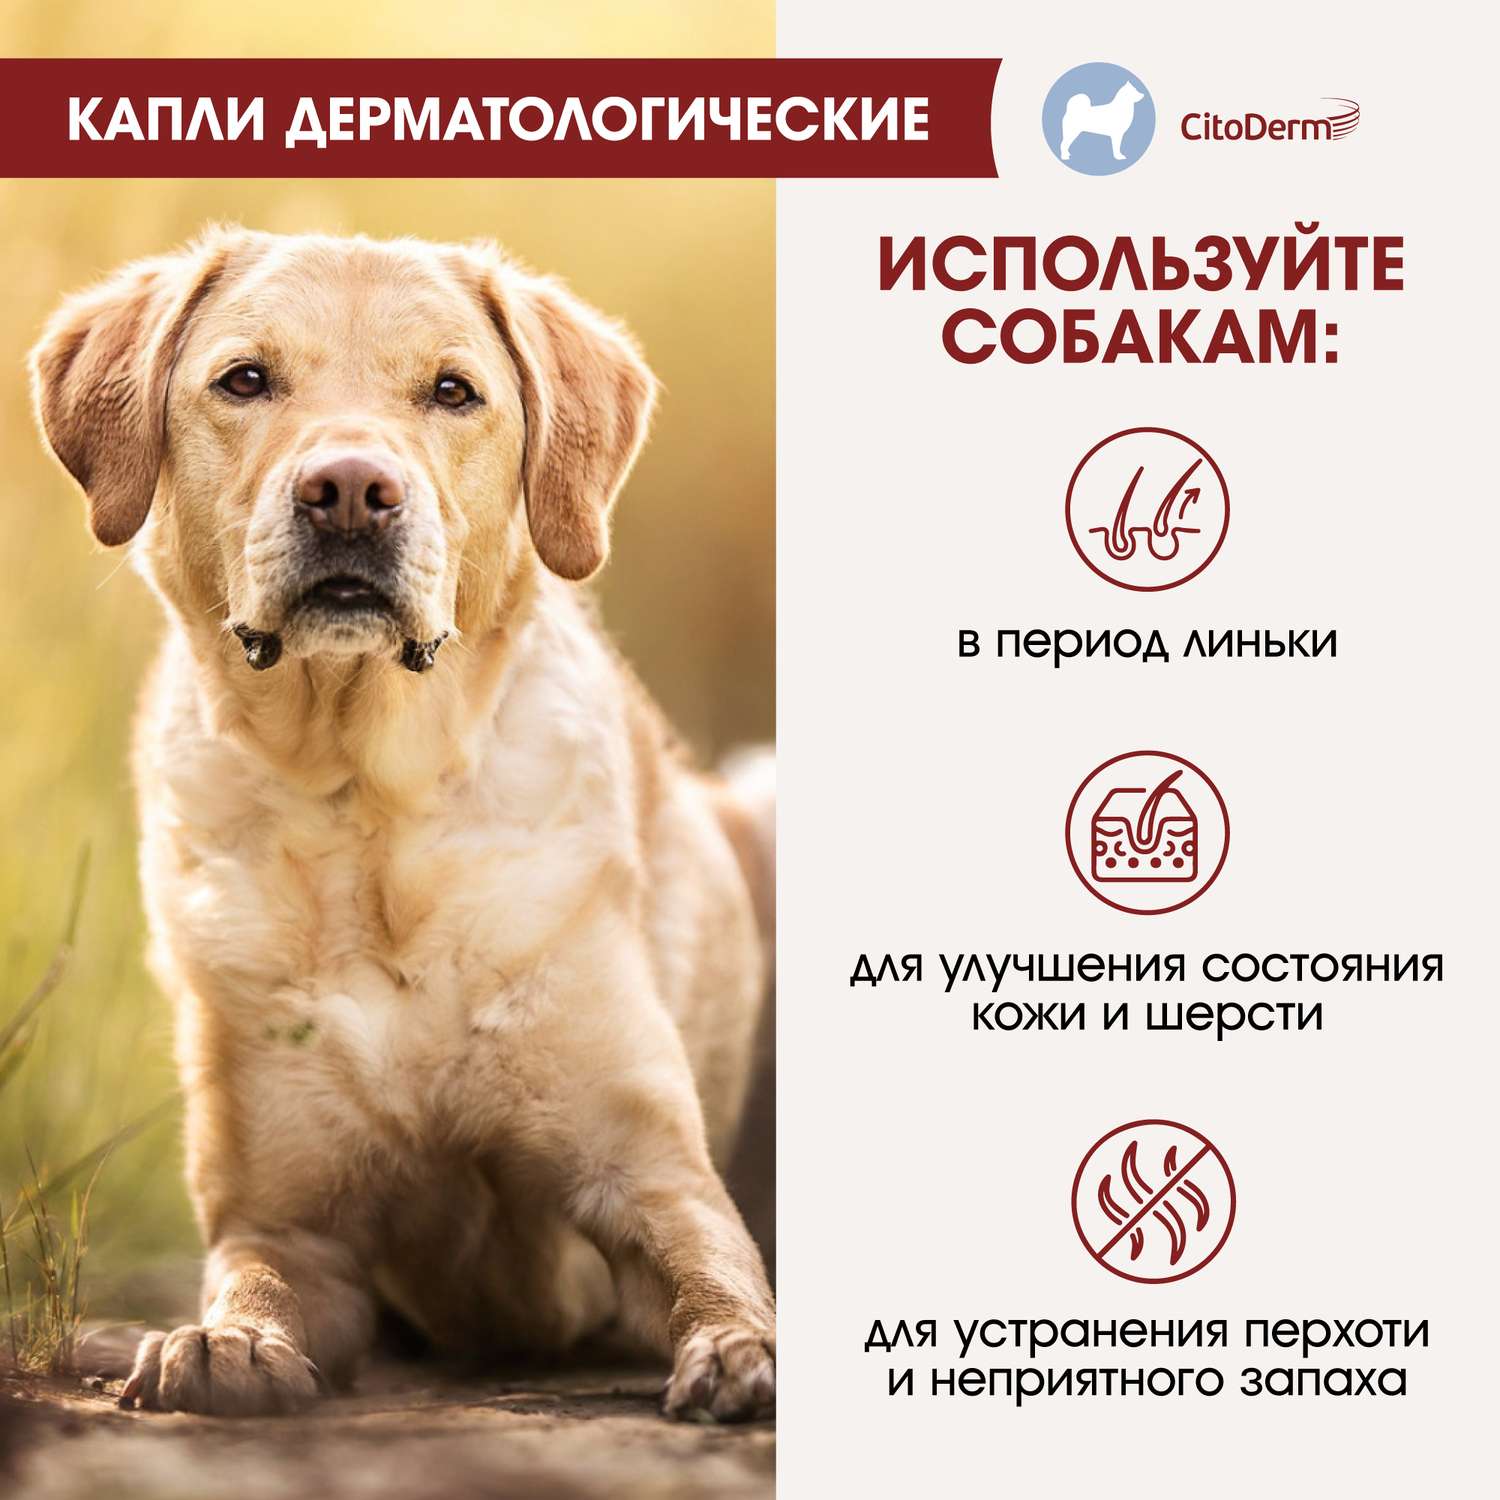 Капли для собак CitoDerm 30-60кг дерматологические 6мл - фото 4